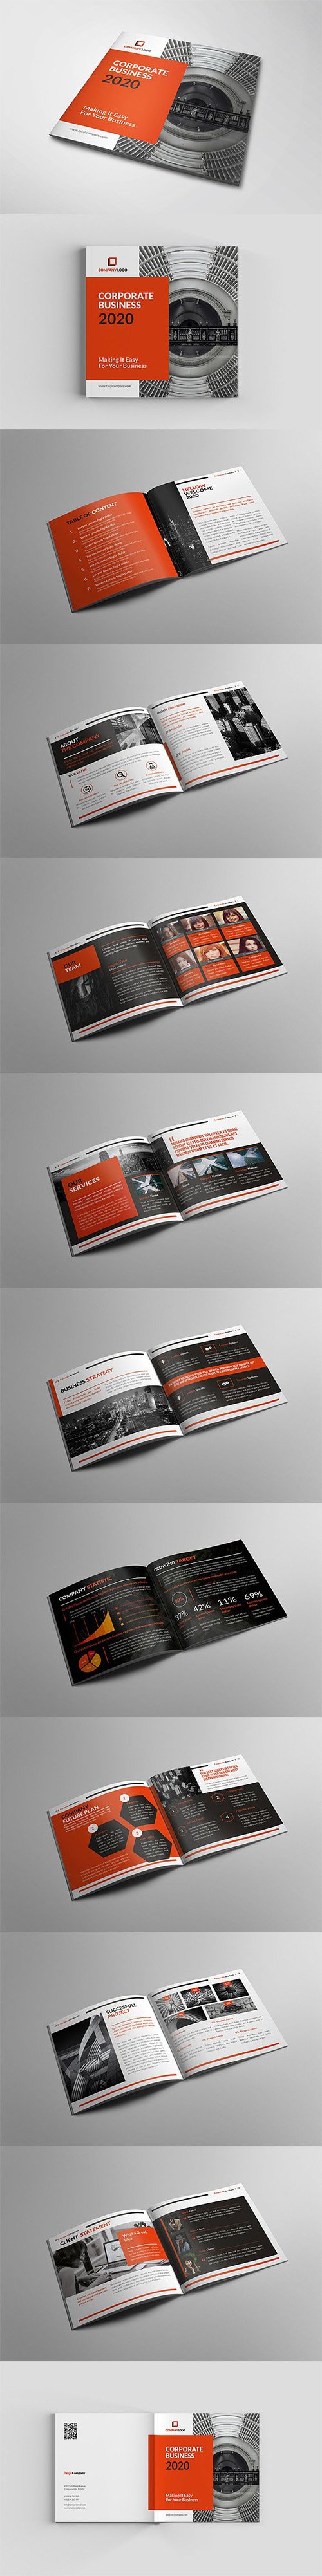 Pakumantan - A Corporate Brochure 3036641